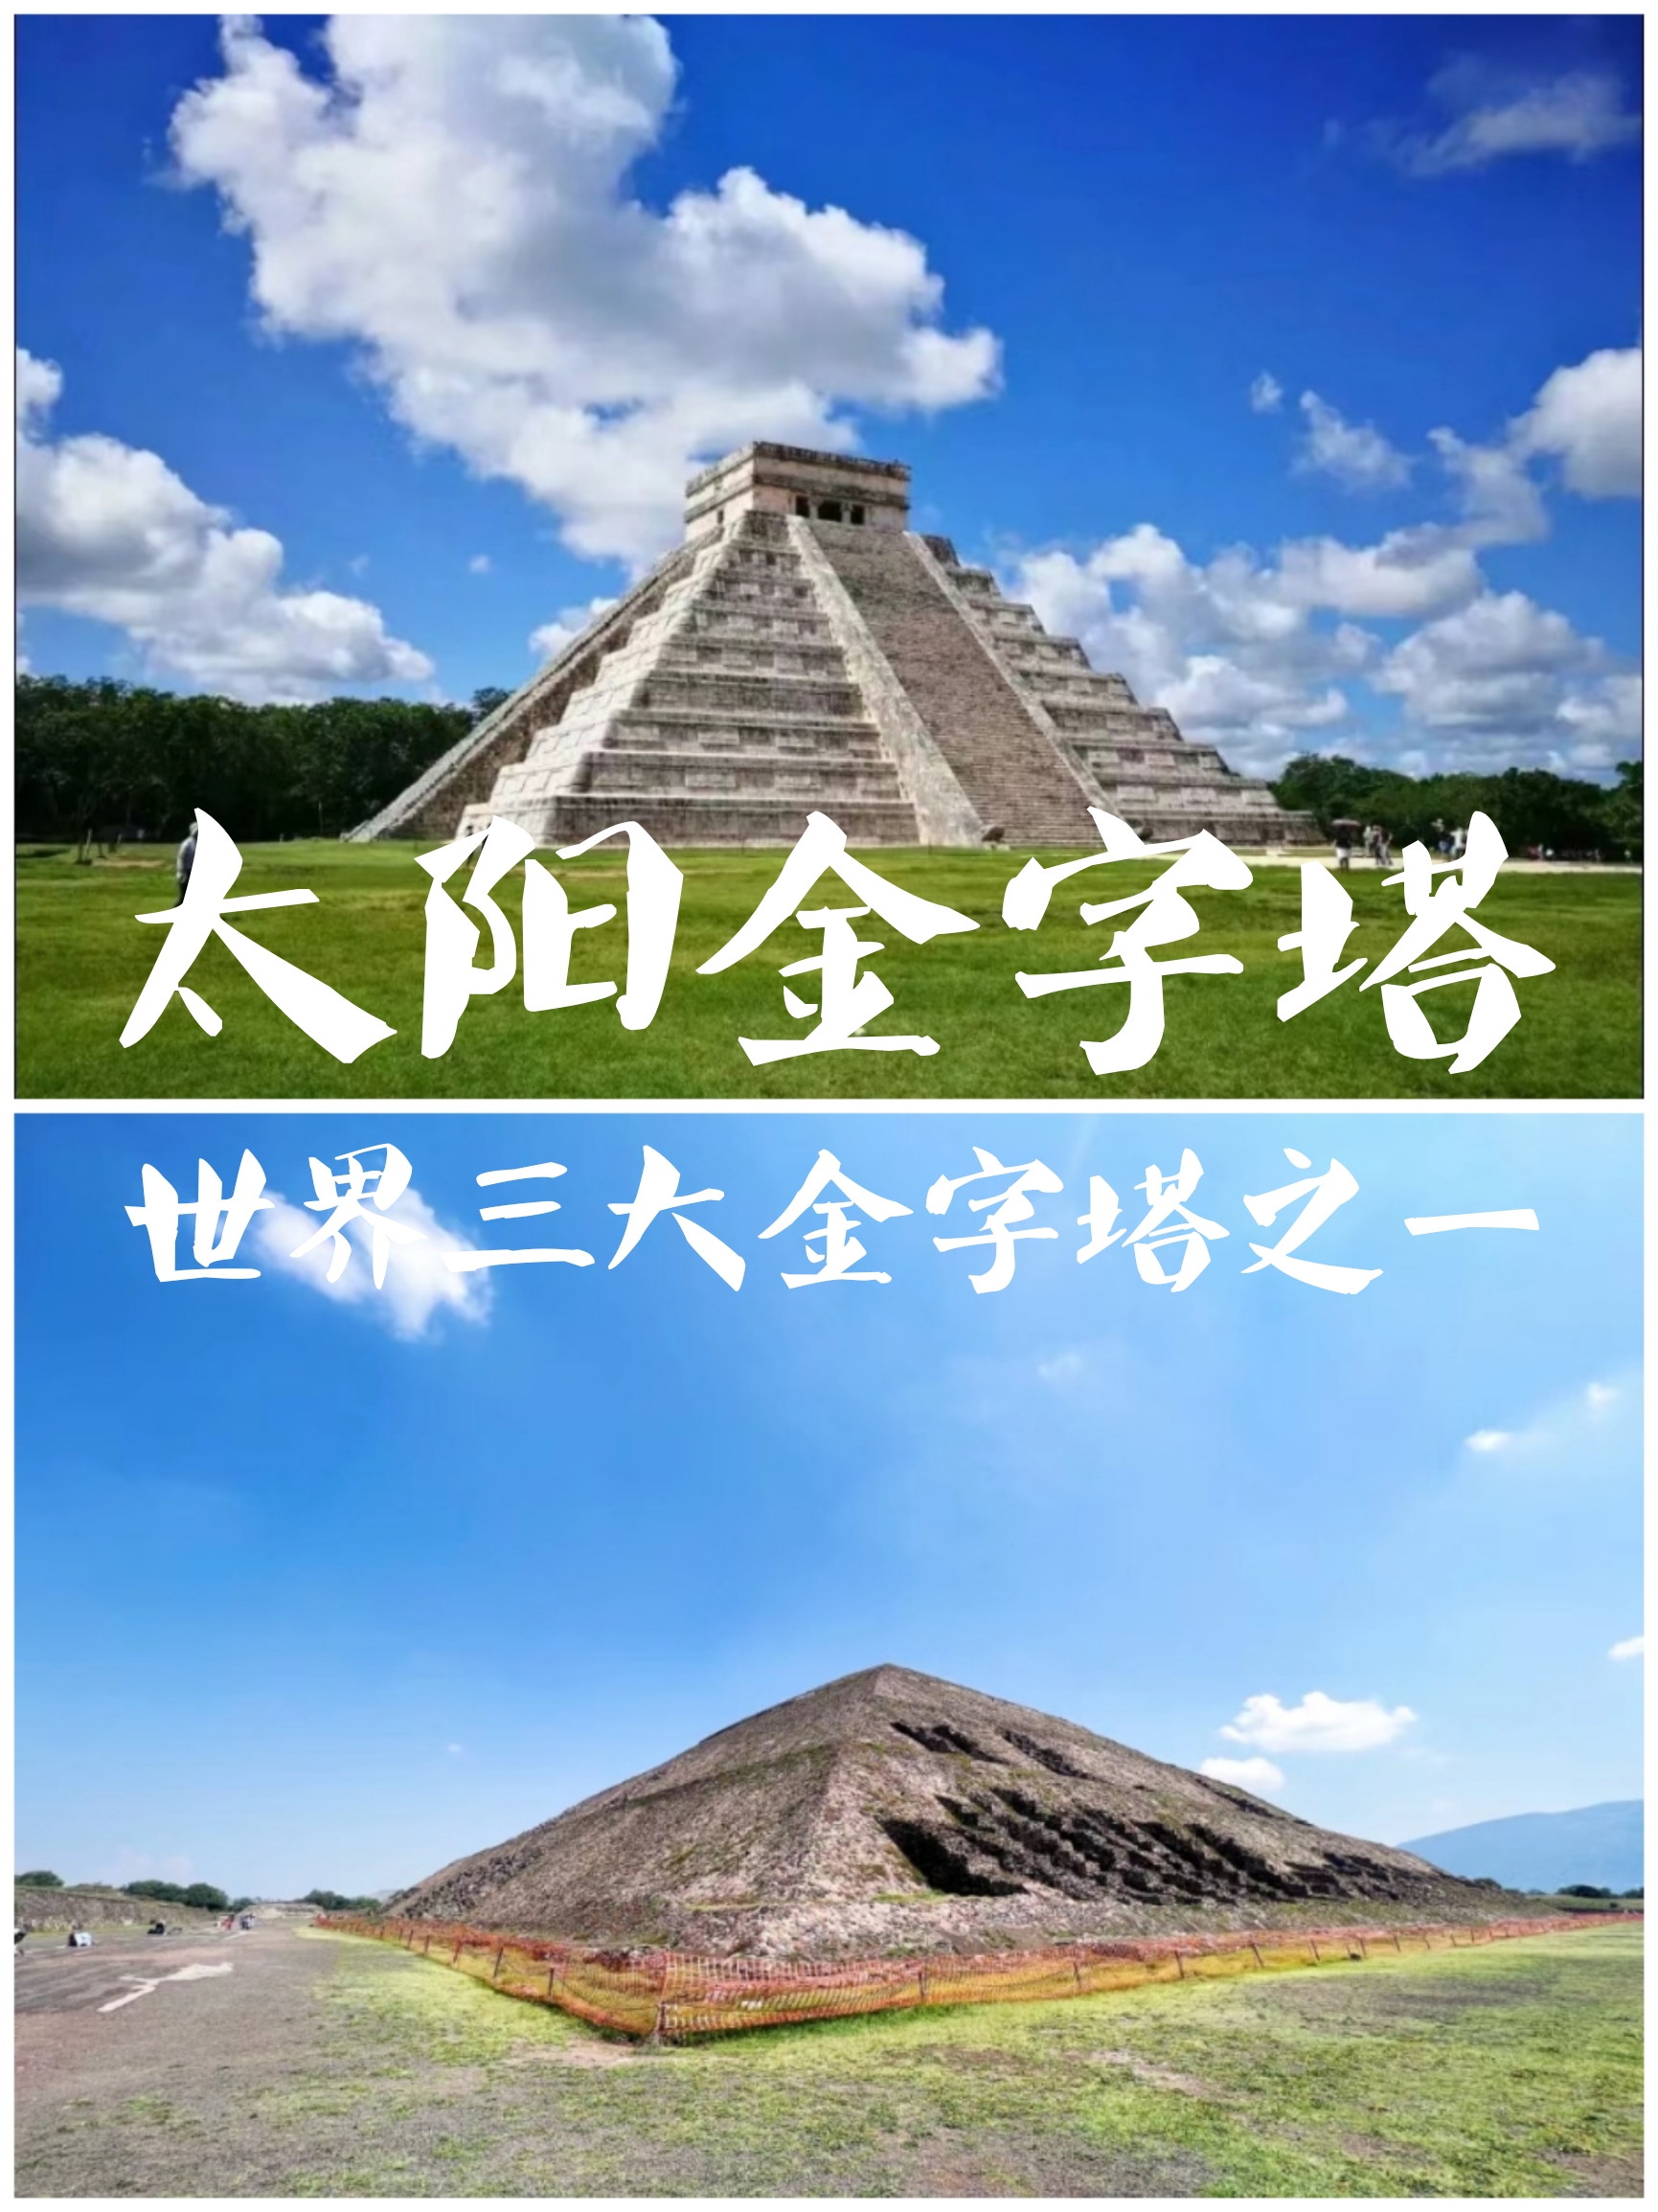 不是埃及才有金字塔，墨西哥也有——太阳金字塔